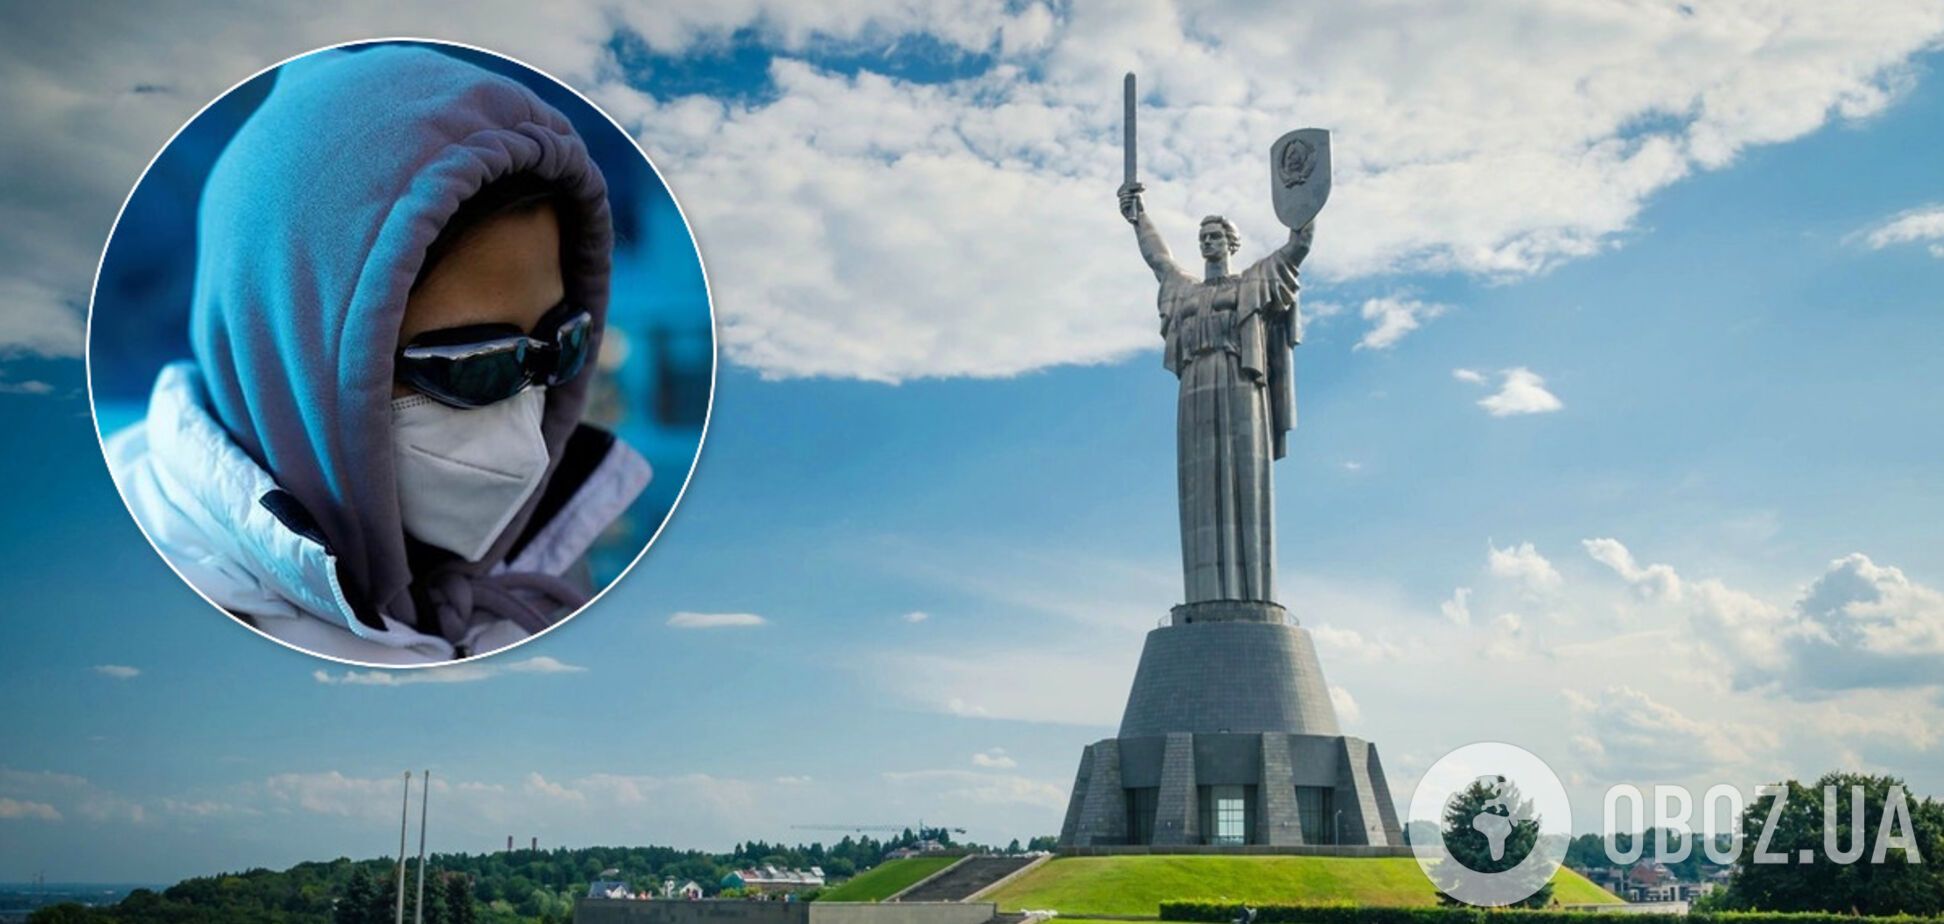 Кличко объяснил, где в Киеве будут проходить обсервацию люди из-за границы. Иллюстрация